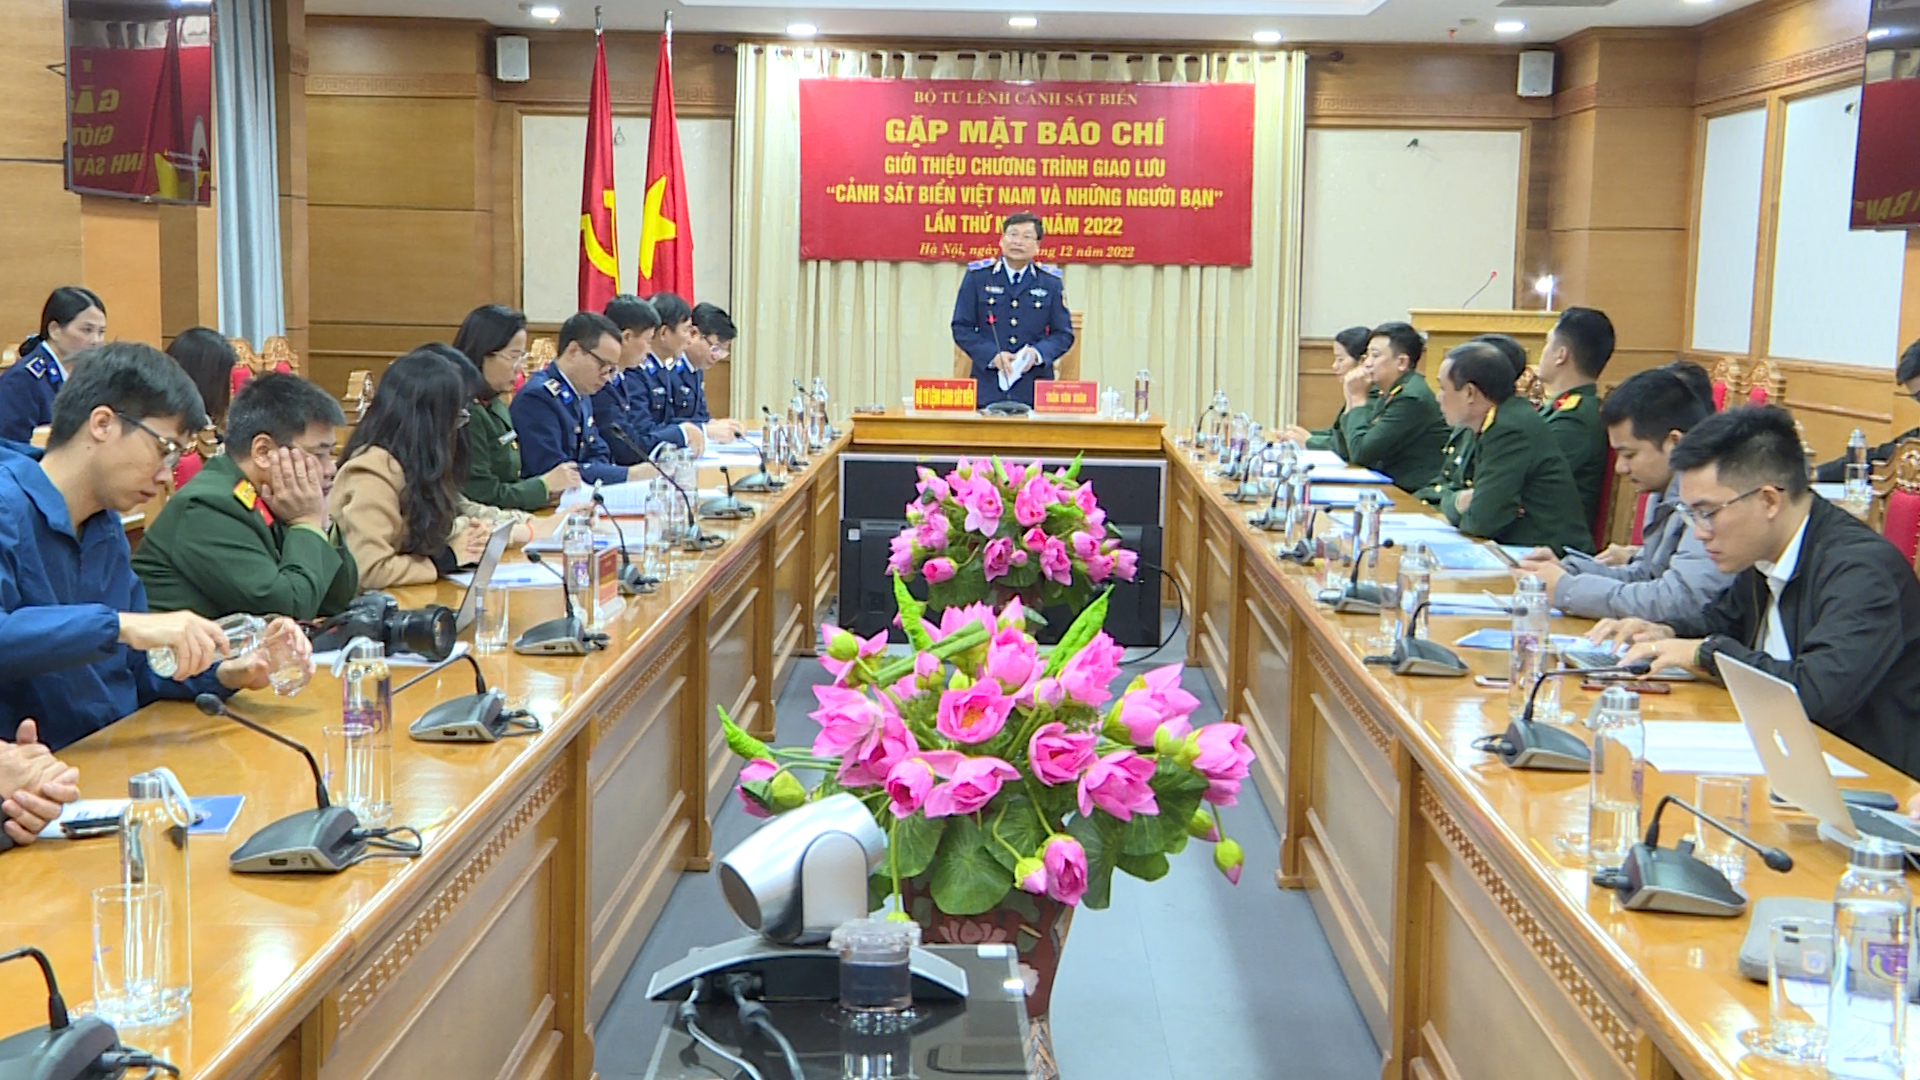 Thông tin về Chương trình “Cảnh sát biển Việt Nam và những người bạn” lần thứ nhất, năm 2022